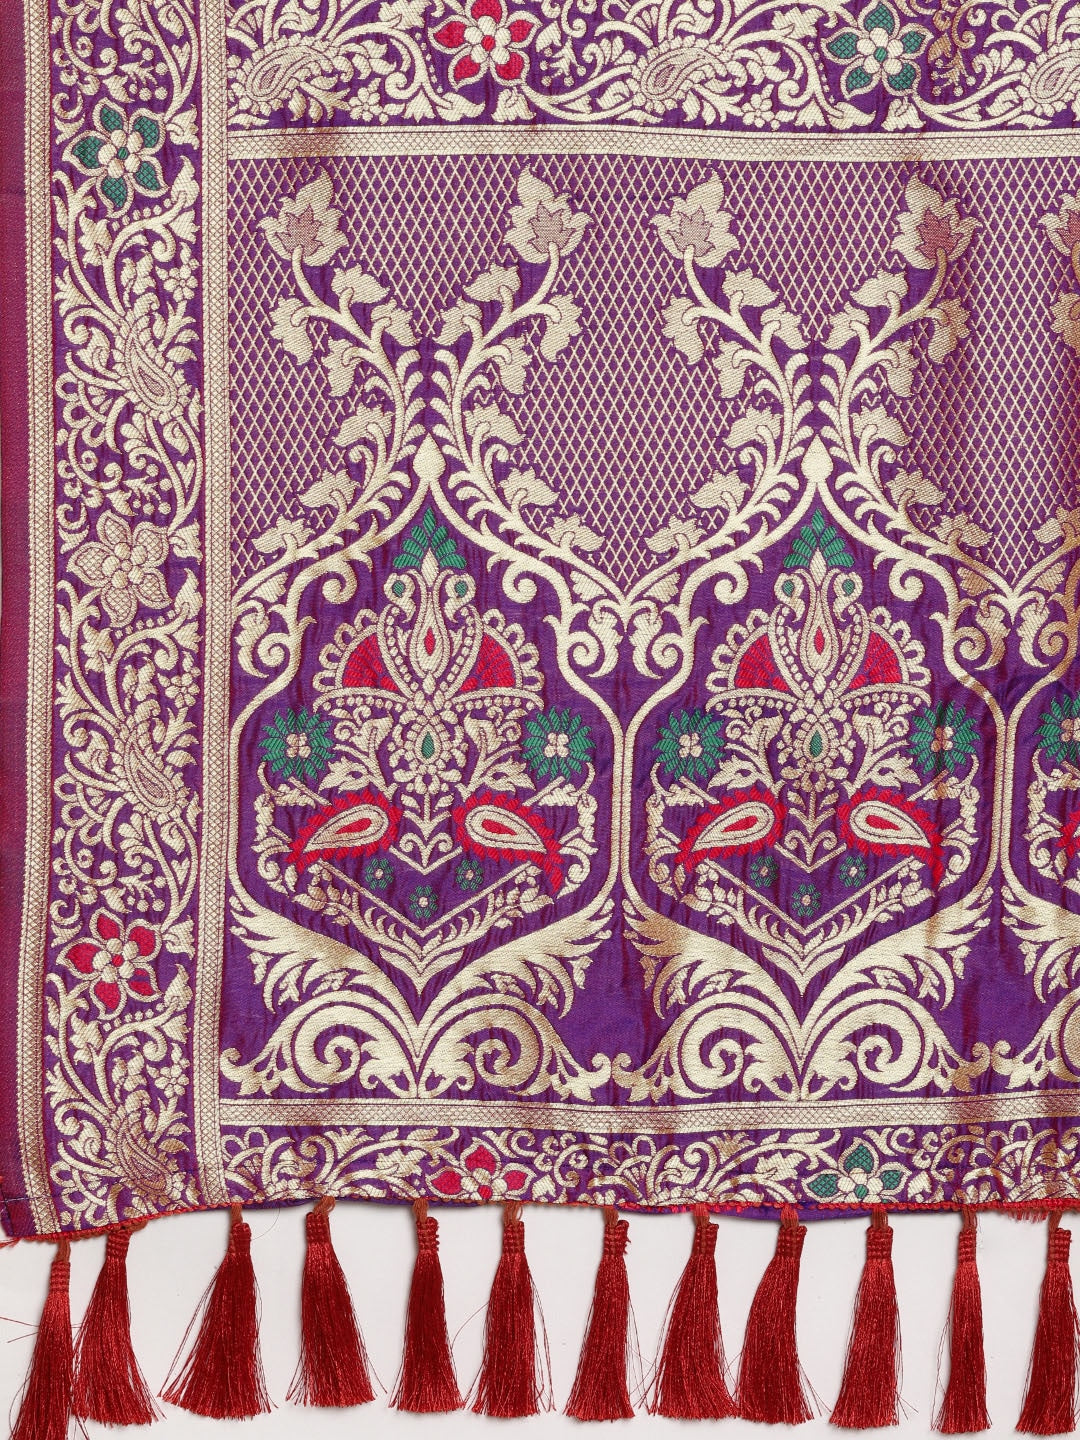  Stylish Purple Kanjivaram Silk Saree